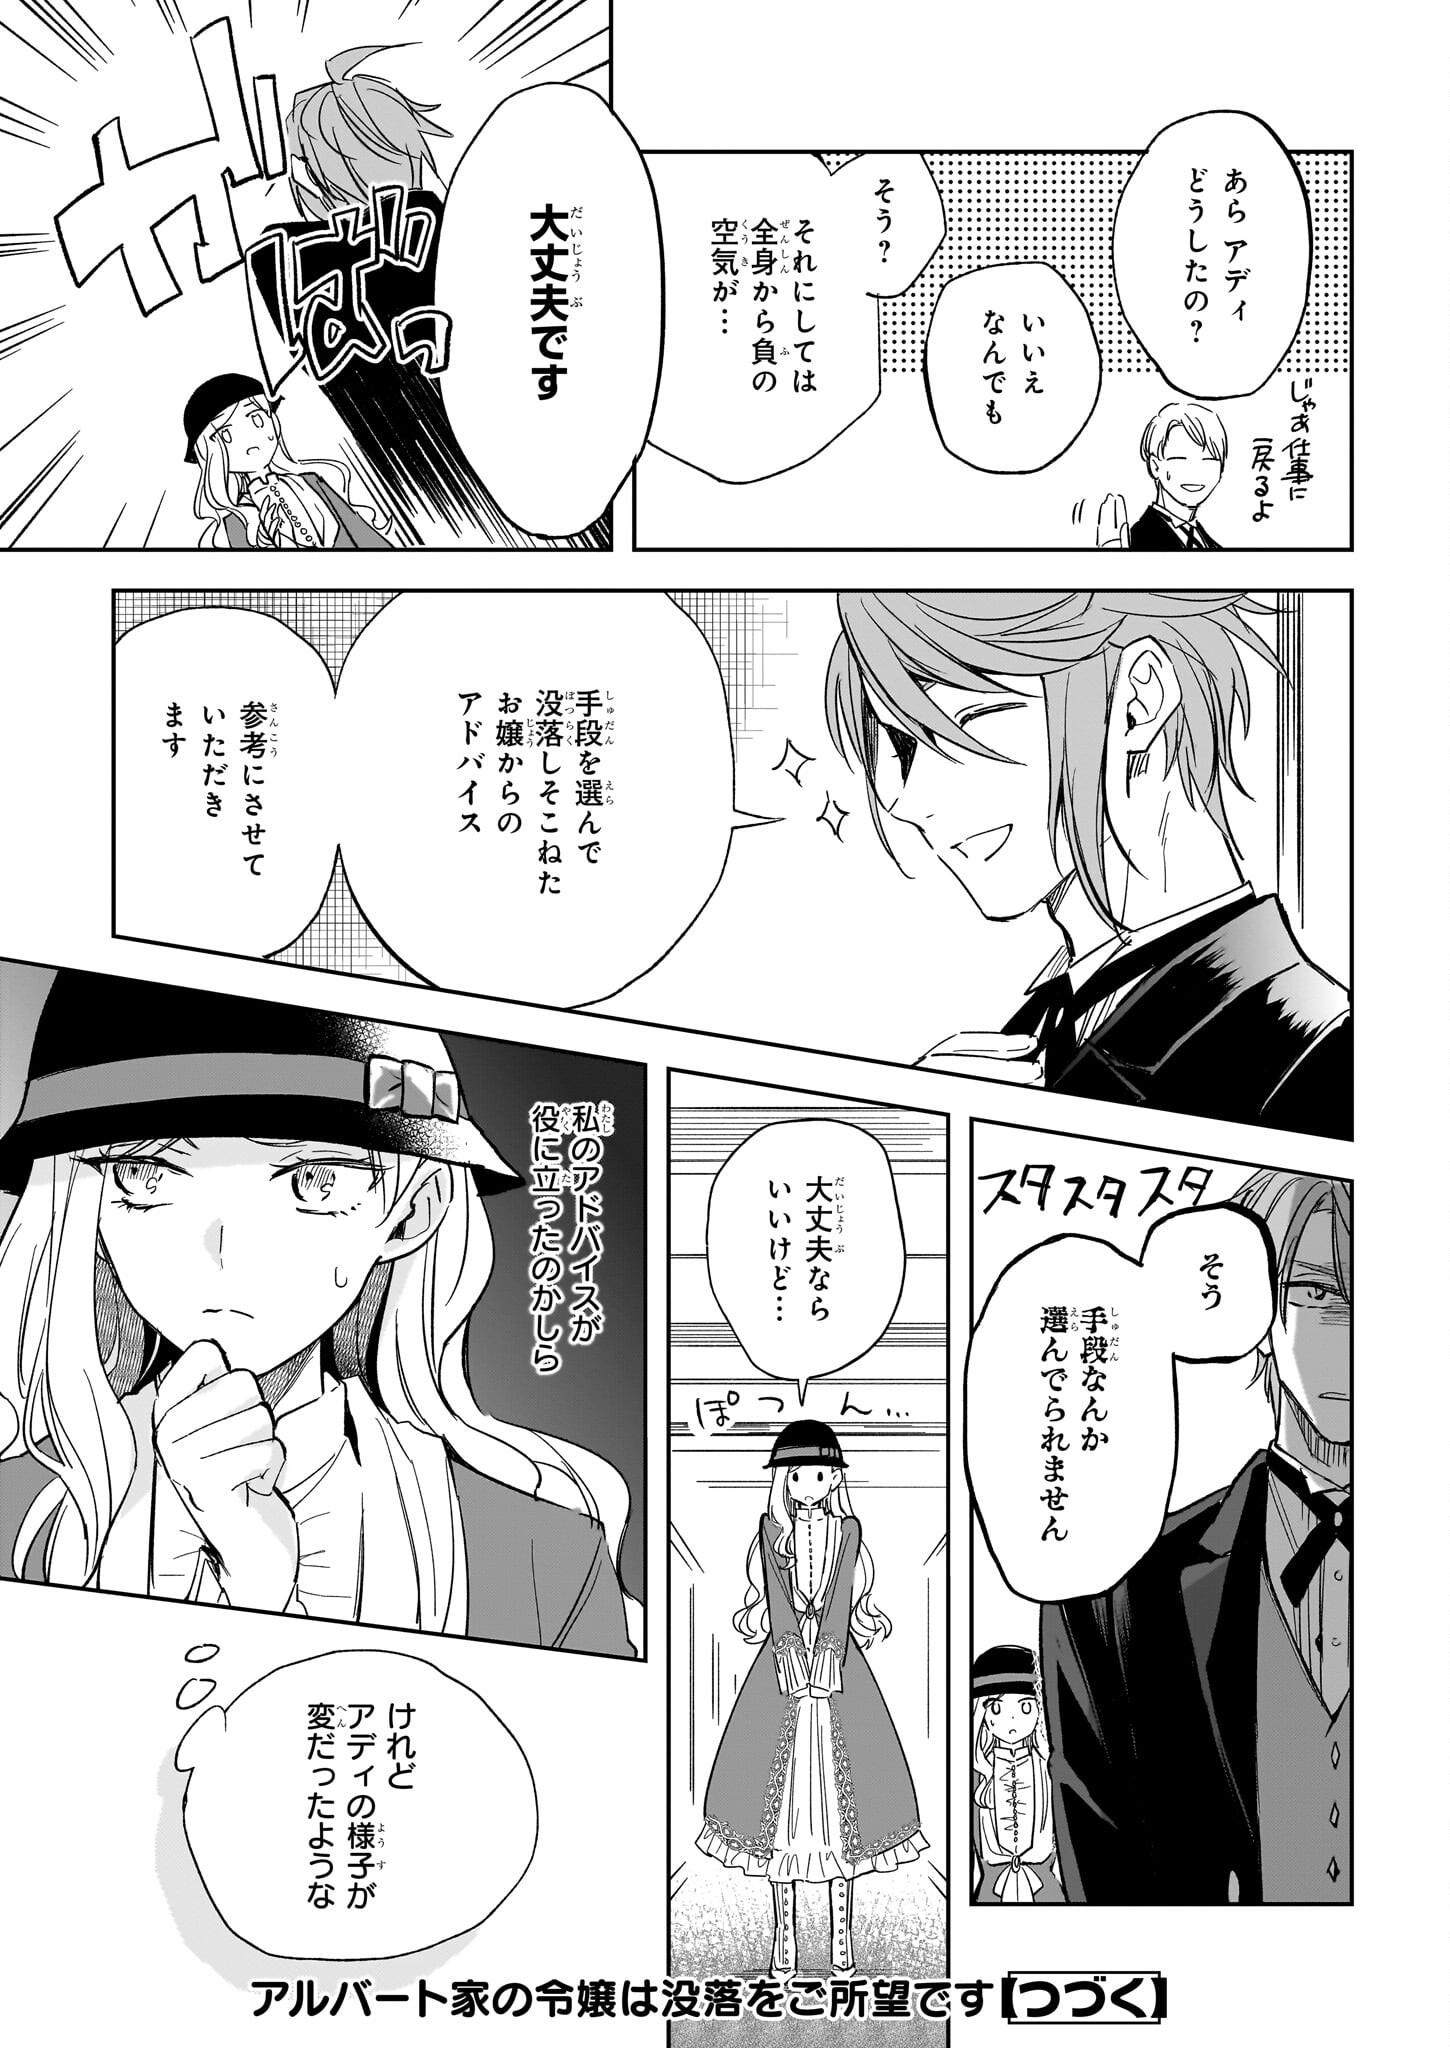 Albert-ke no Reijou wa Botsuraku wo Goshomou desu - Chapter 26.1 - Page 23